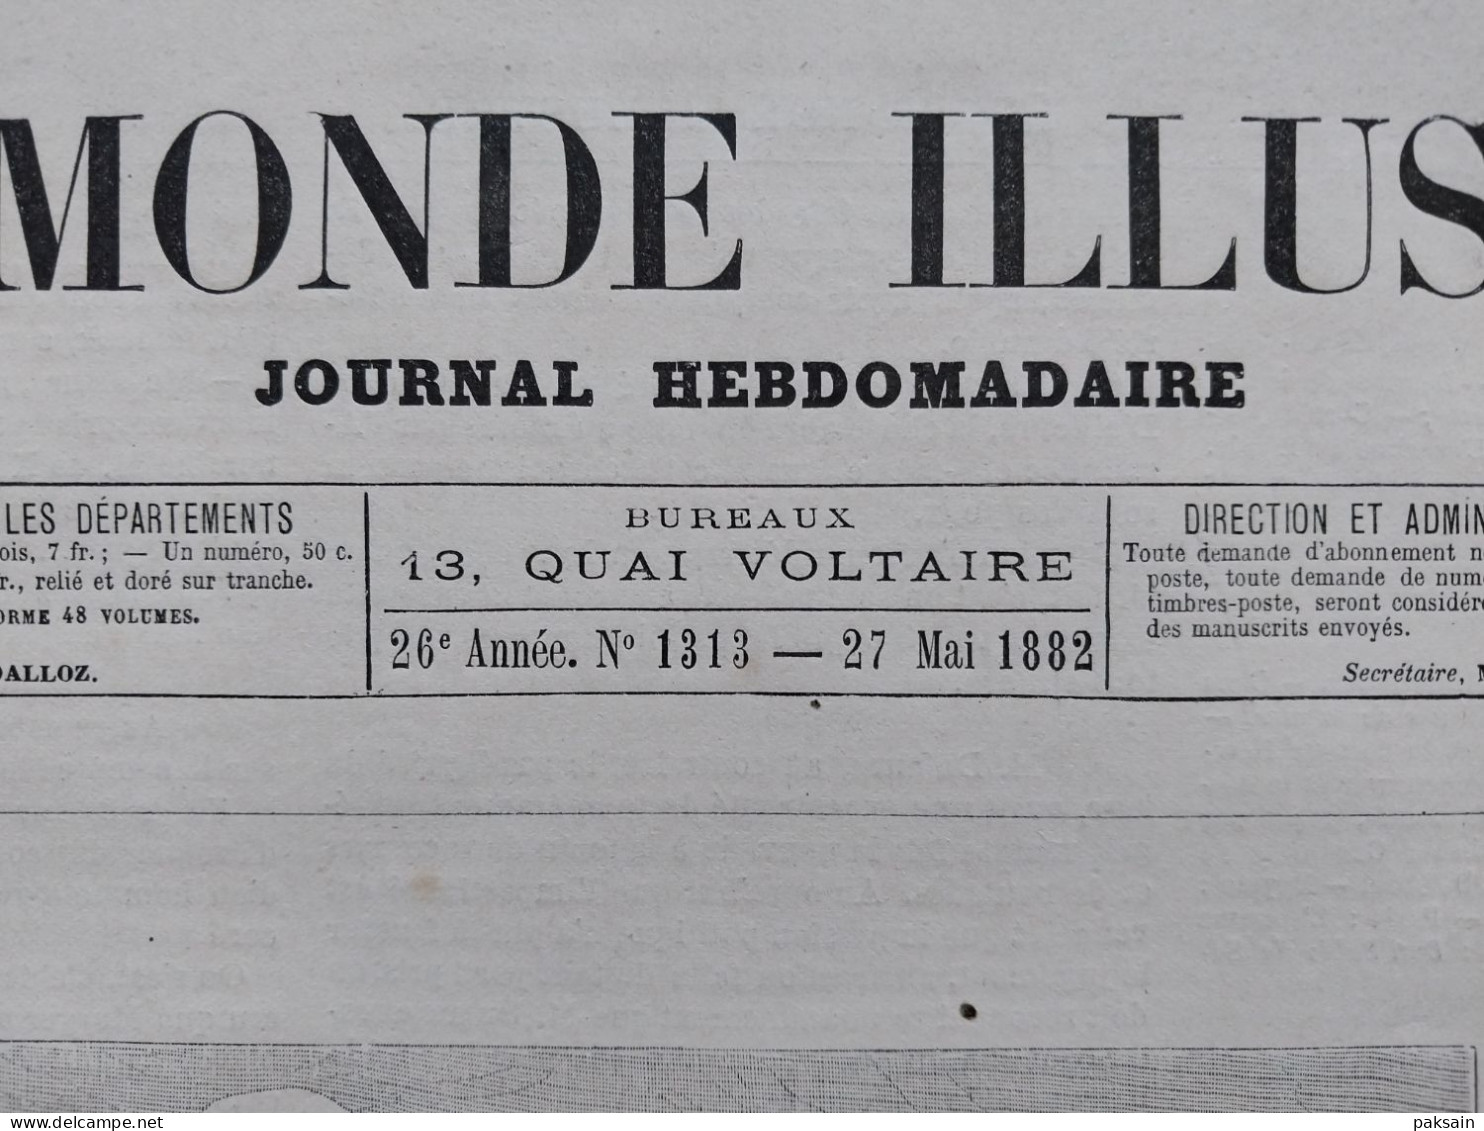 Le Monde Illustré 1882 Escrime à Paris - Russie / Cavalcade à Berne Suisse / Irrigation Egypte - Magazines - Before 1900